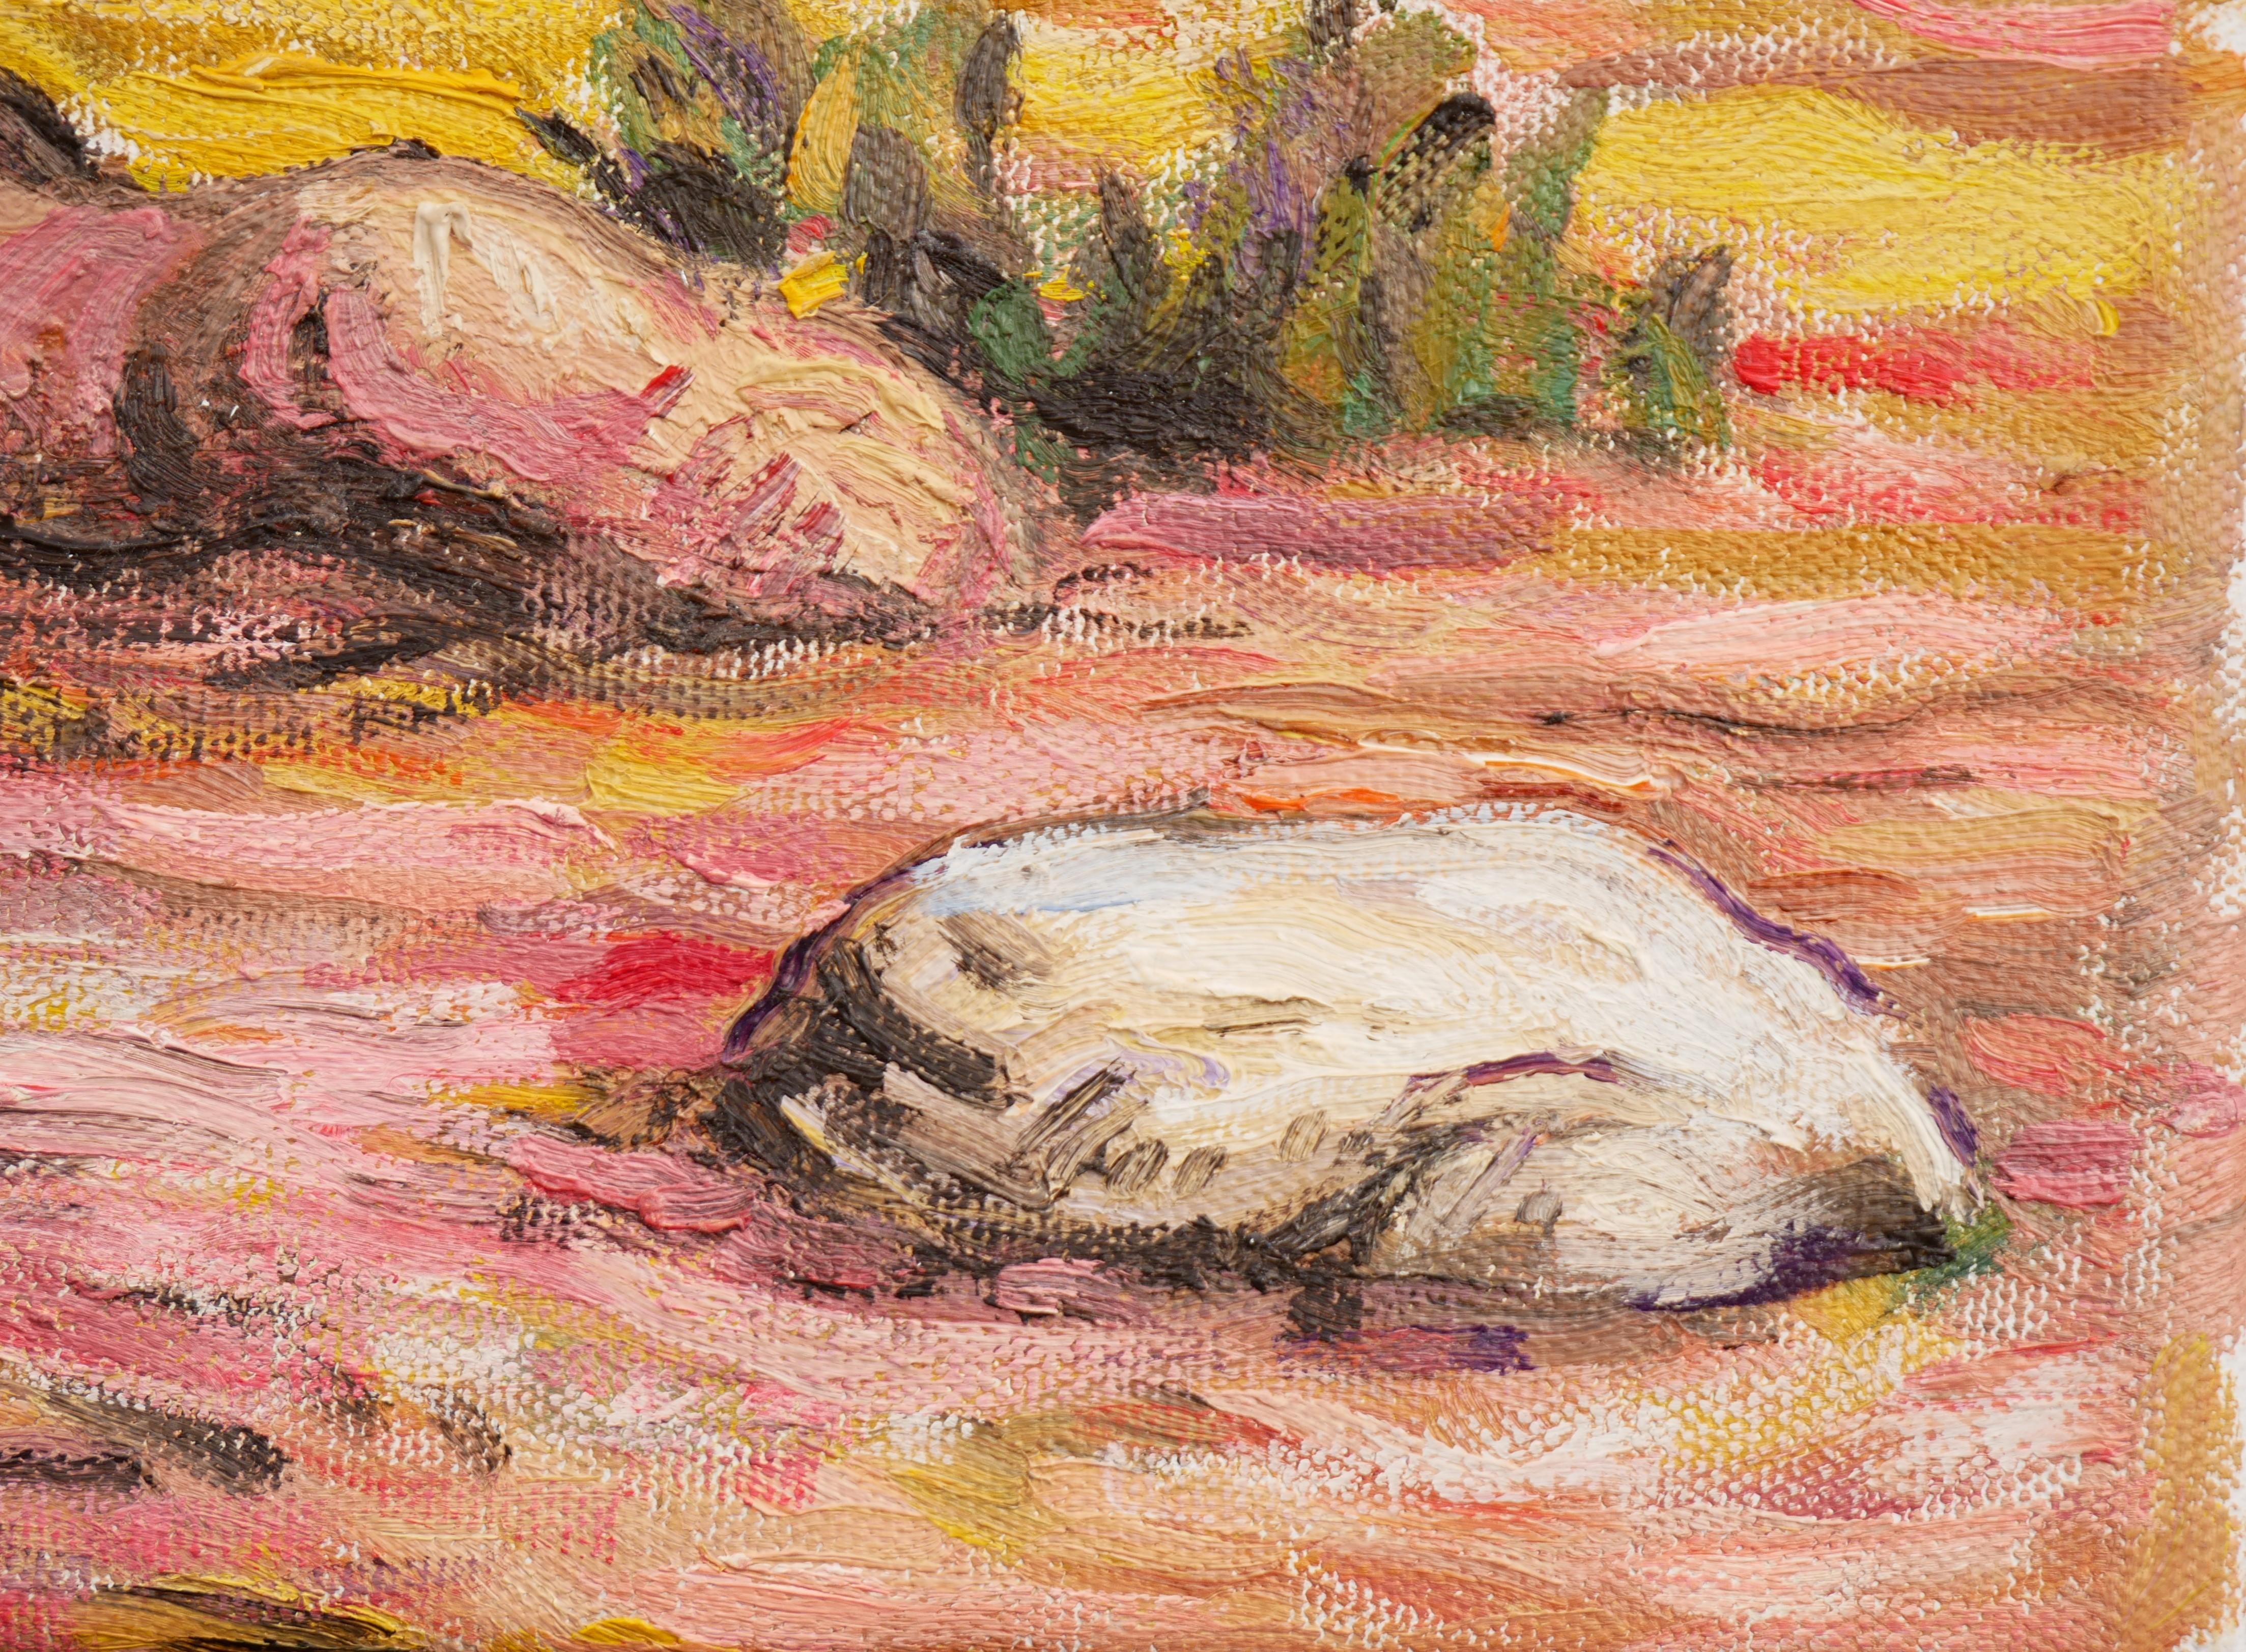 Buntes, pastellfarbenes Gemälde des zeitgenössischen Künstlers Henry David Potwin. Dieses Werk zeigt eine rosafarbene und gelbe Landschaftsszene mit einem Totenkopf, der am Fuße eines Baumes sitzt und über einen Stein in der Nähe nachdenkt. Signiert